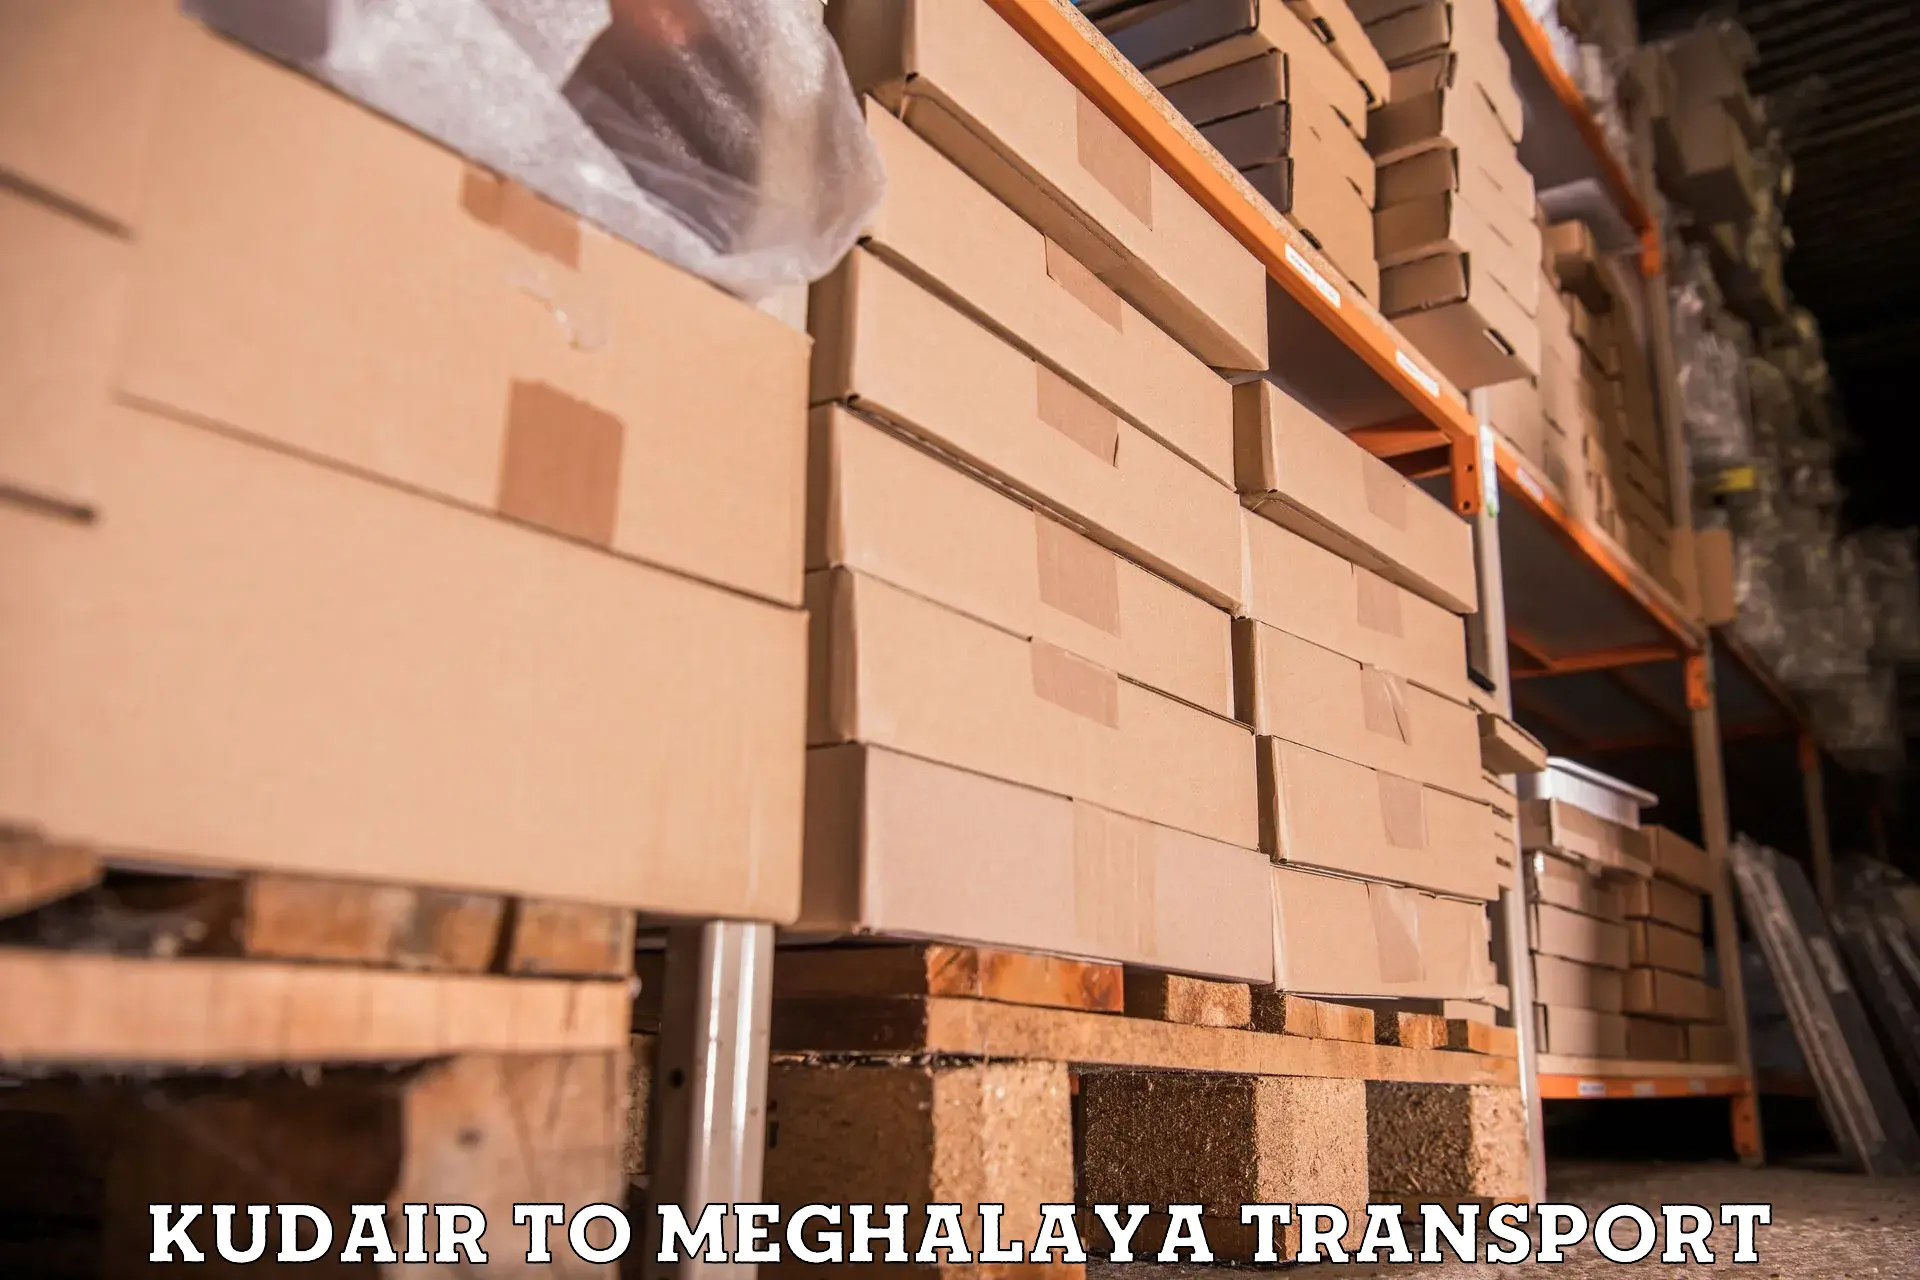 Lorry transport service Kudair to Meghalaya